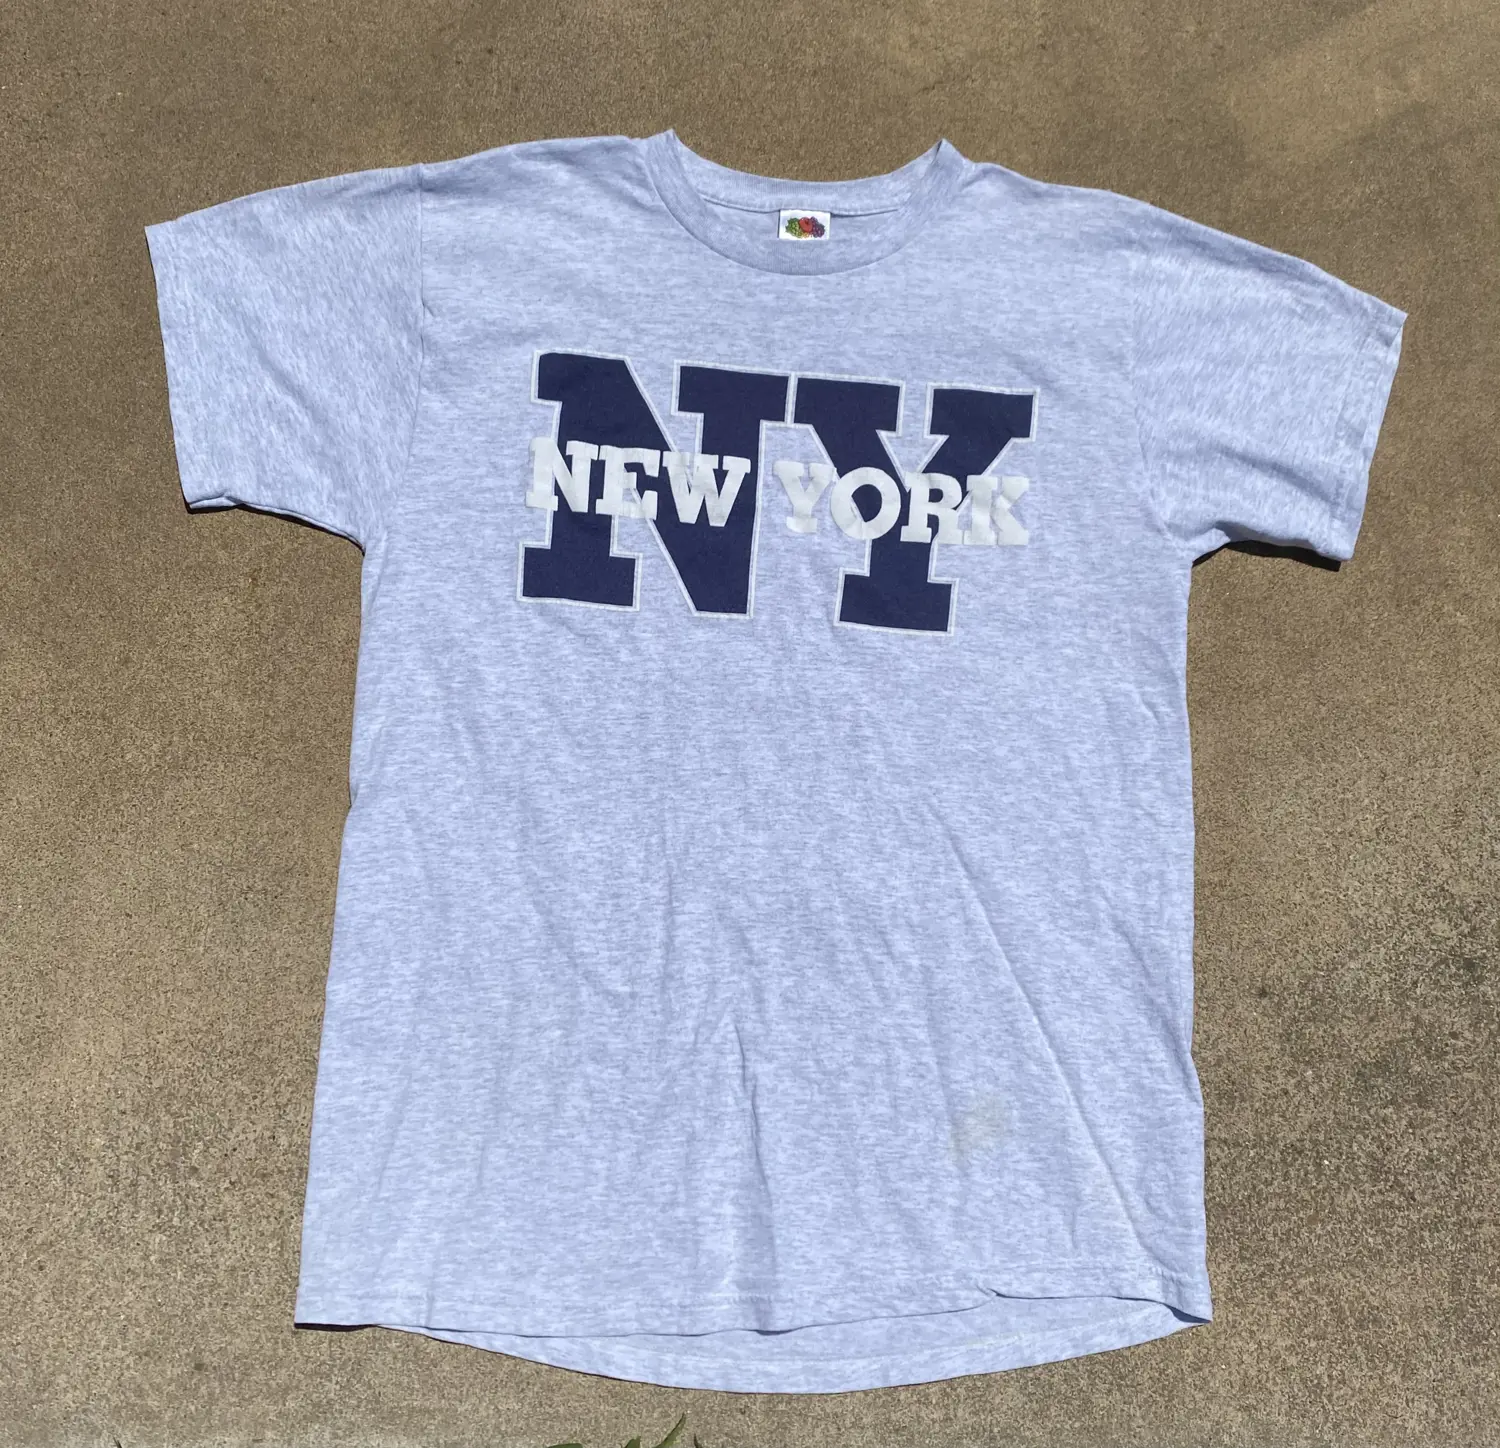 Vintage New York tshirt